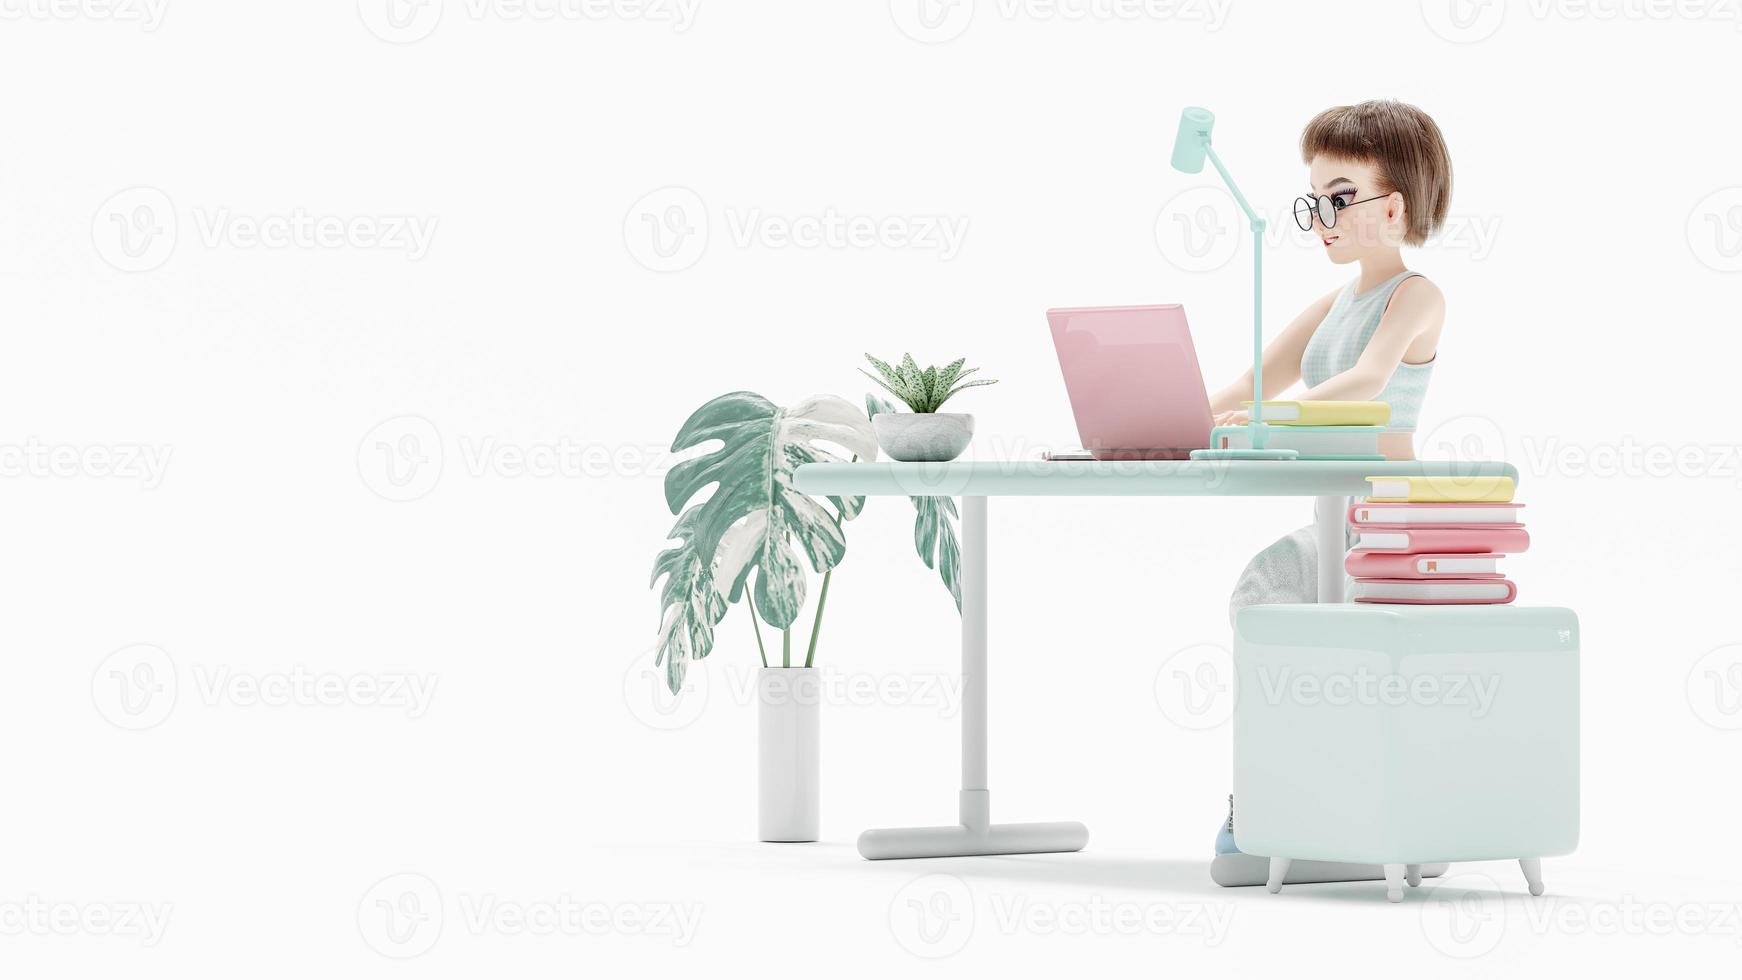 gelukkige jonge vrouw zittend op een stoel. geniet van het bestuderen van leren en het onderzoeken van informatie van de computer. roze laptop wordt op het bureau geplaatst. stripfiguur, 3D-rendering foto